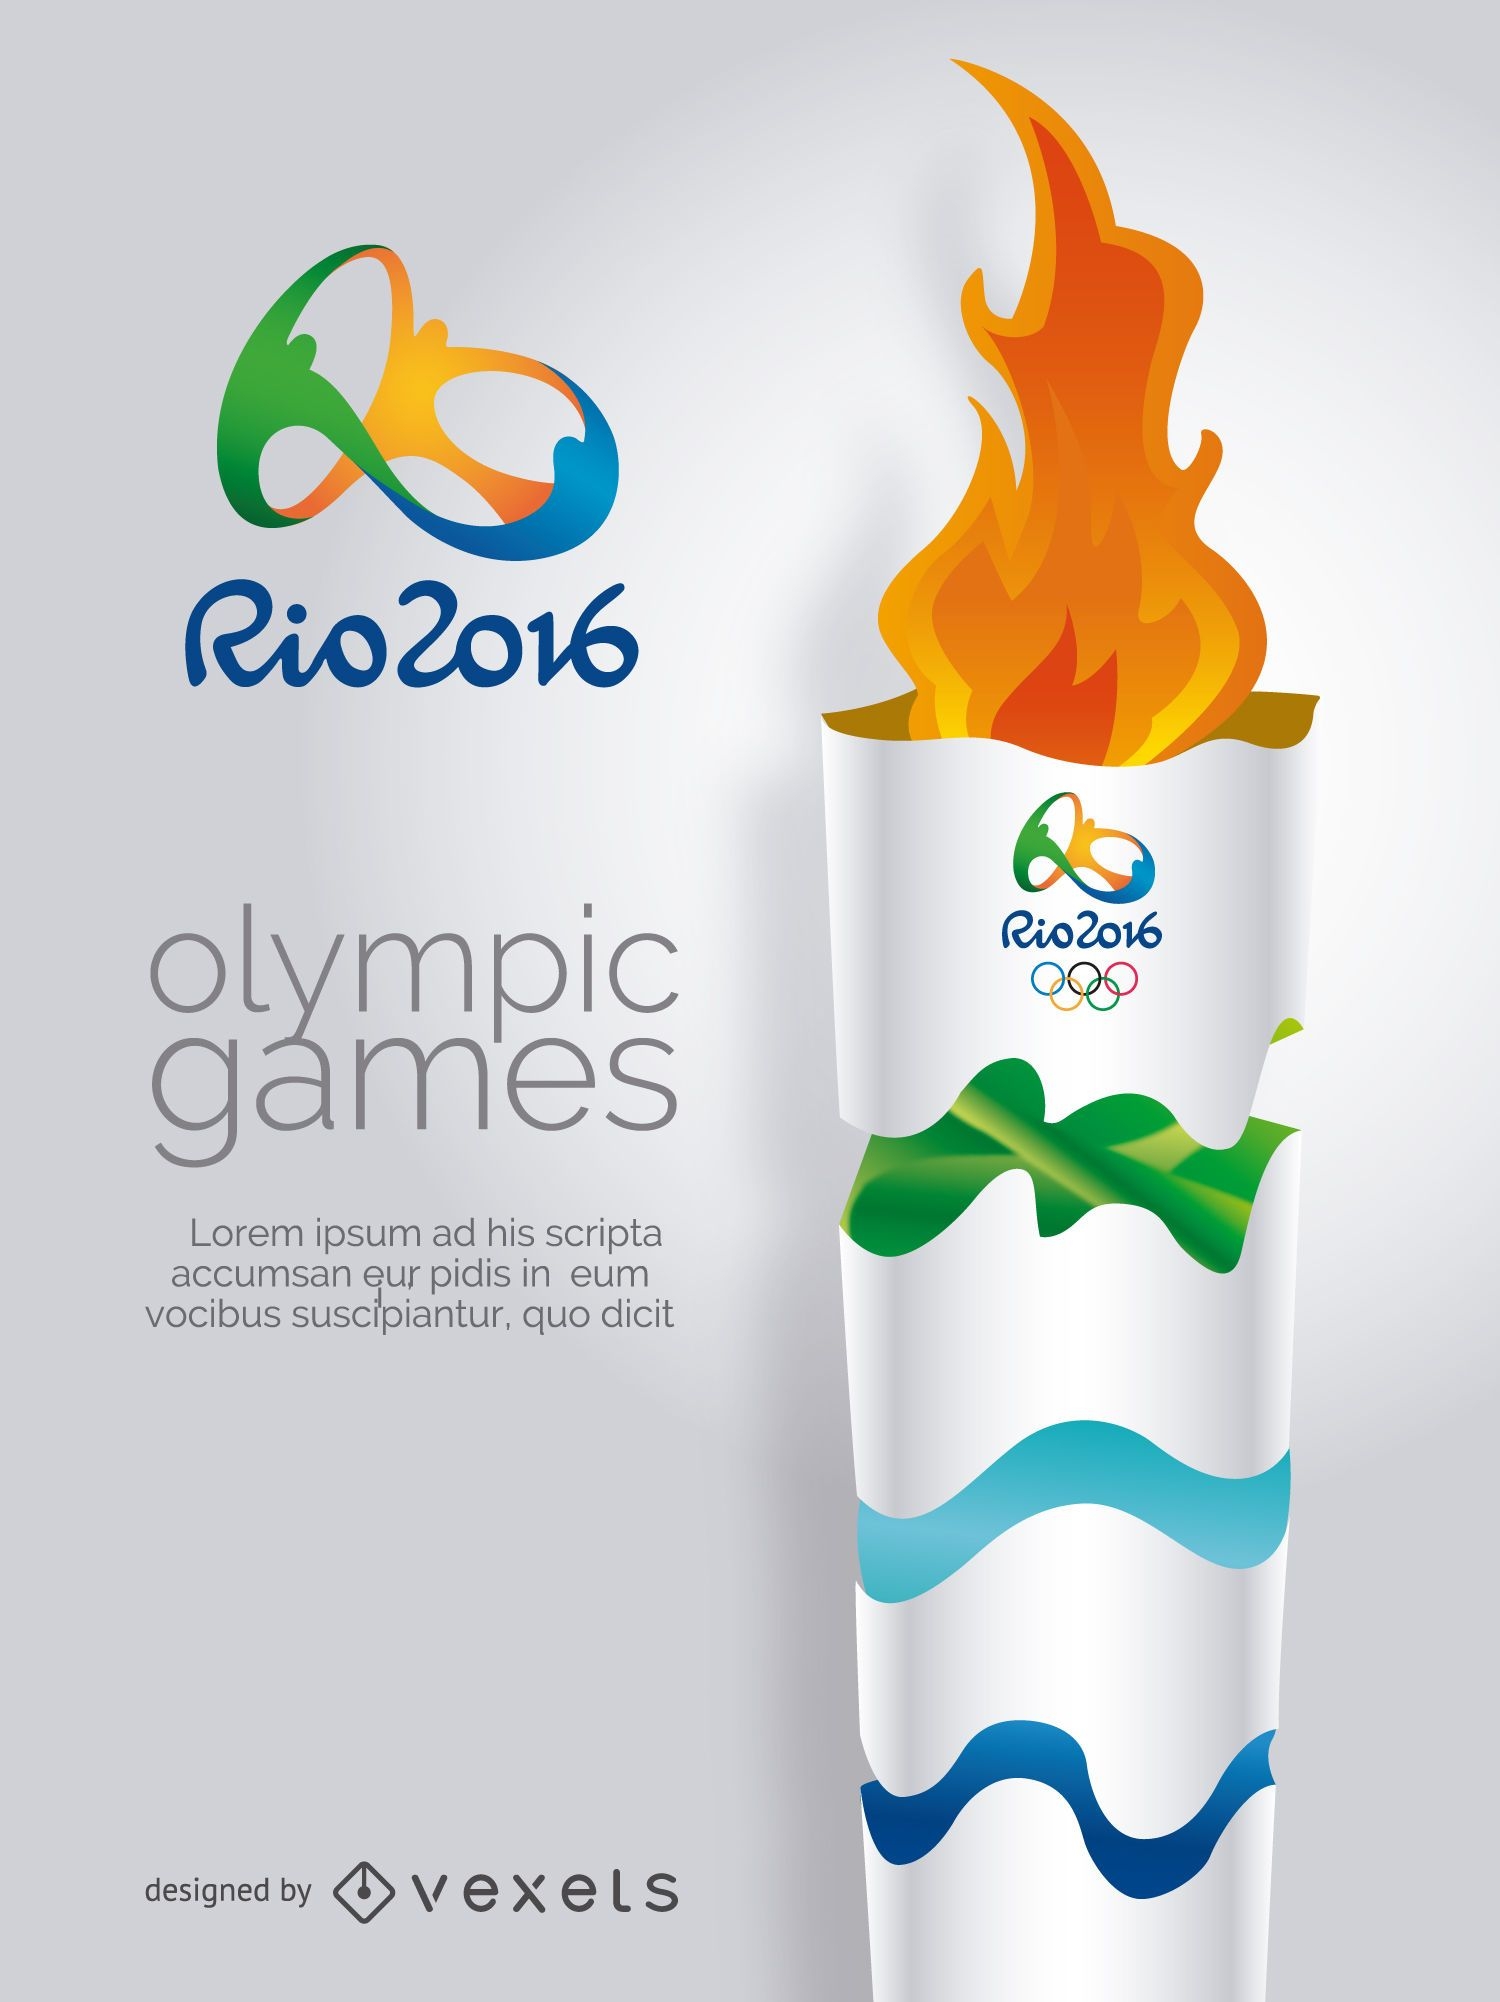 Juegos Olímpicos Rio 2016-Antorcha Olímpica